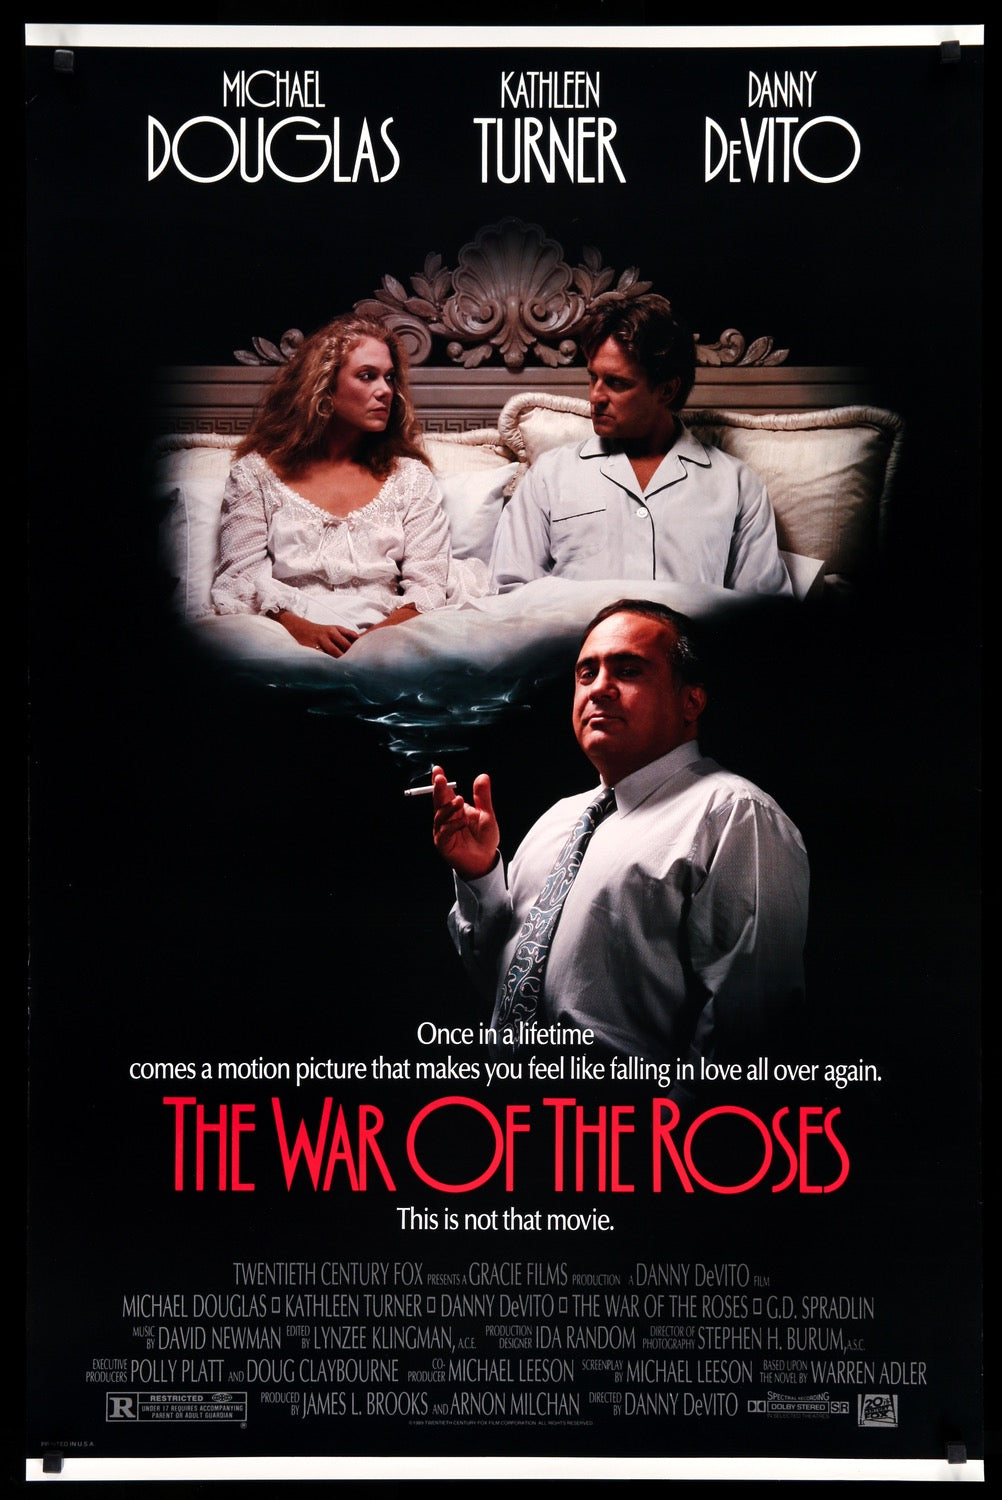 War of the Roses (1989) original movie poster for sale at Original Film Art